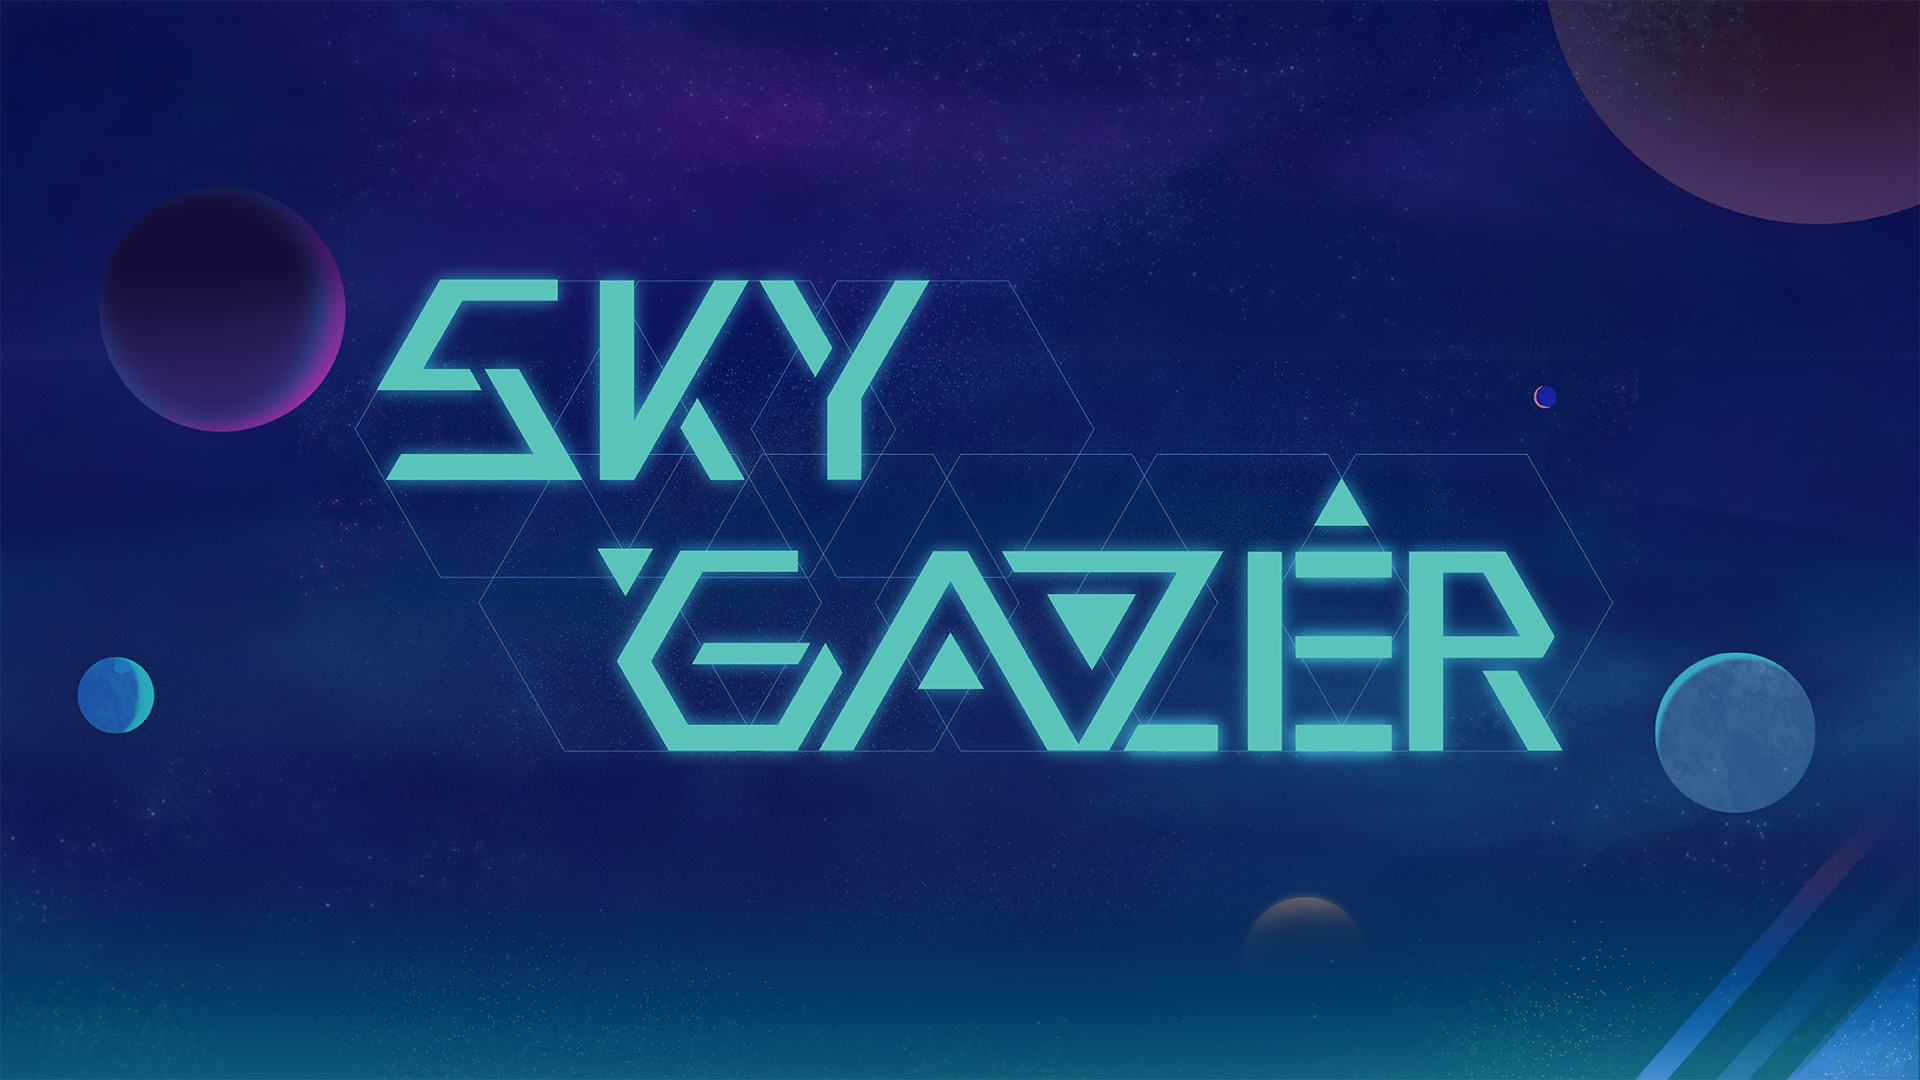 Skygazer游戏截图